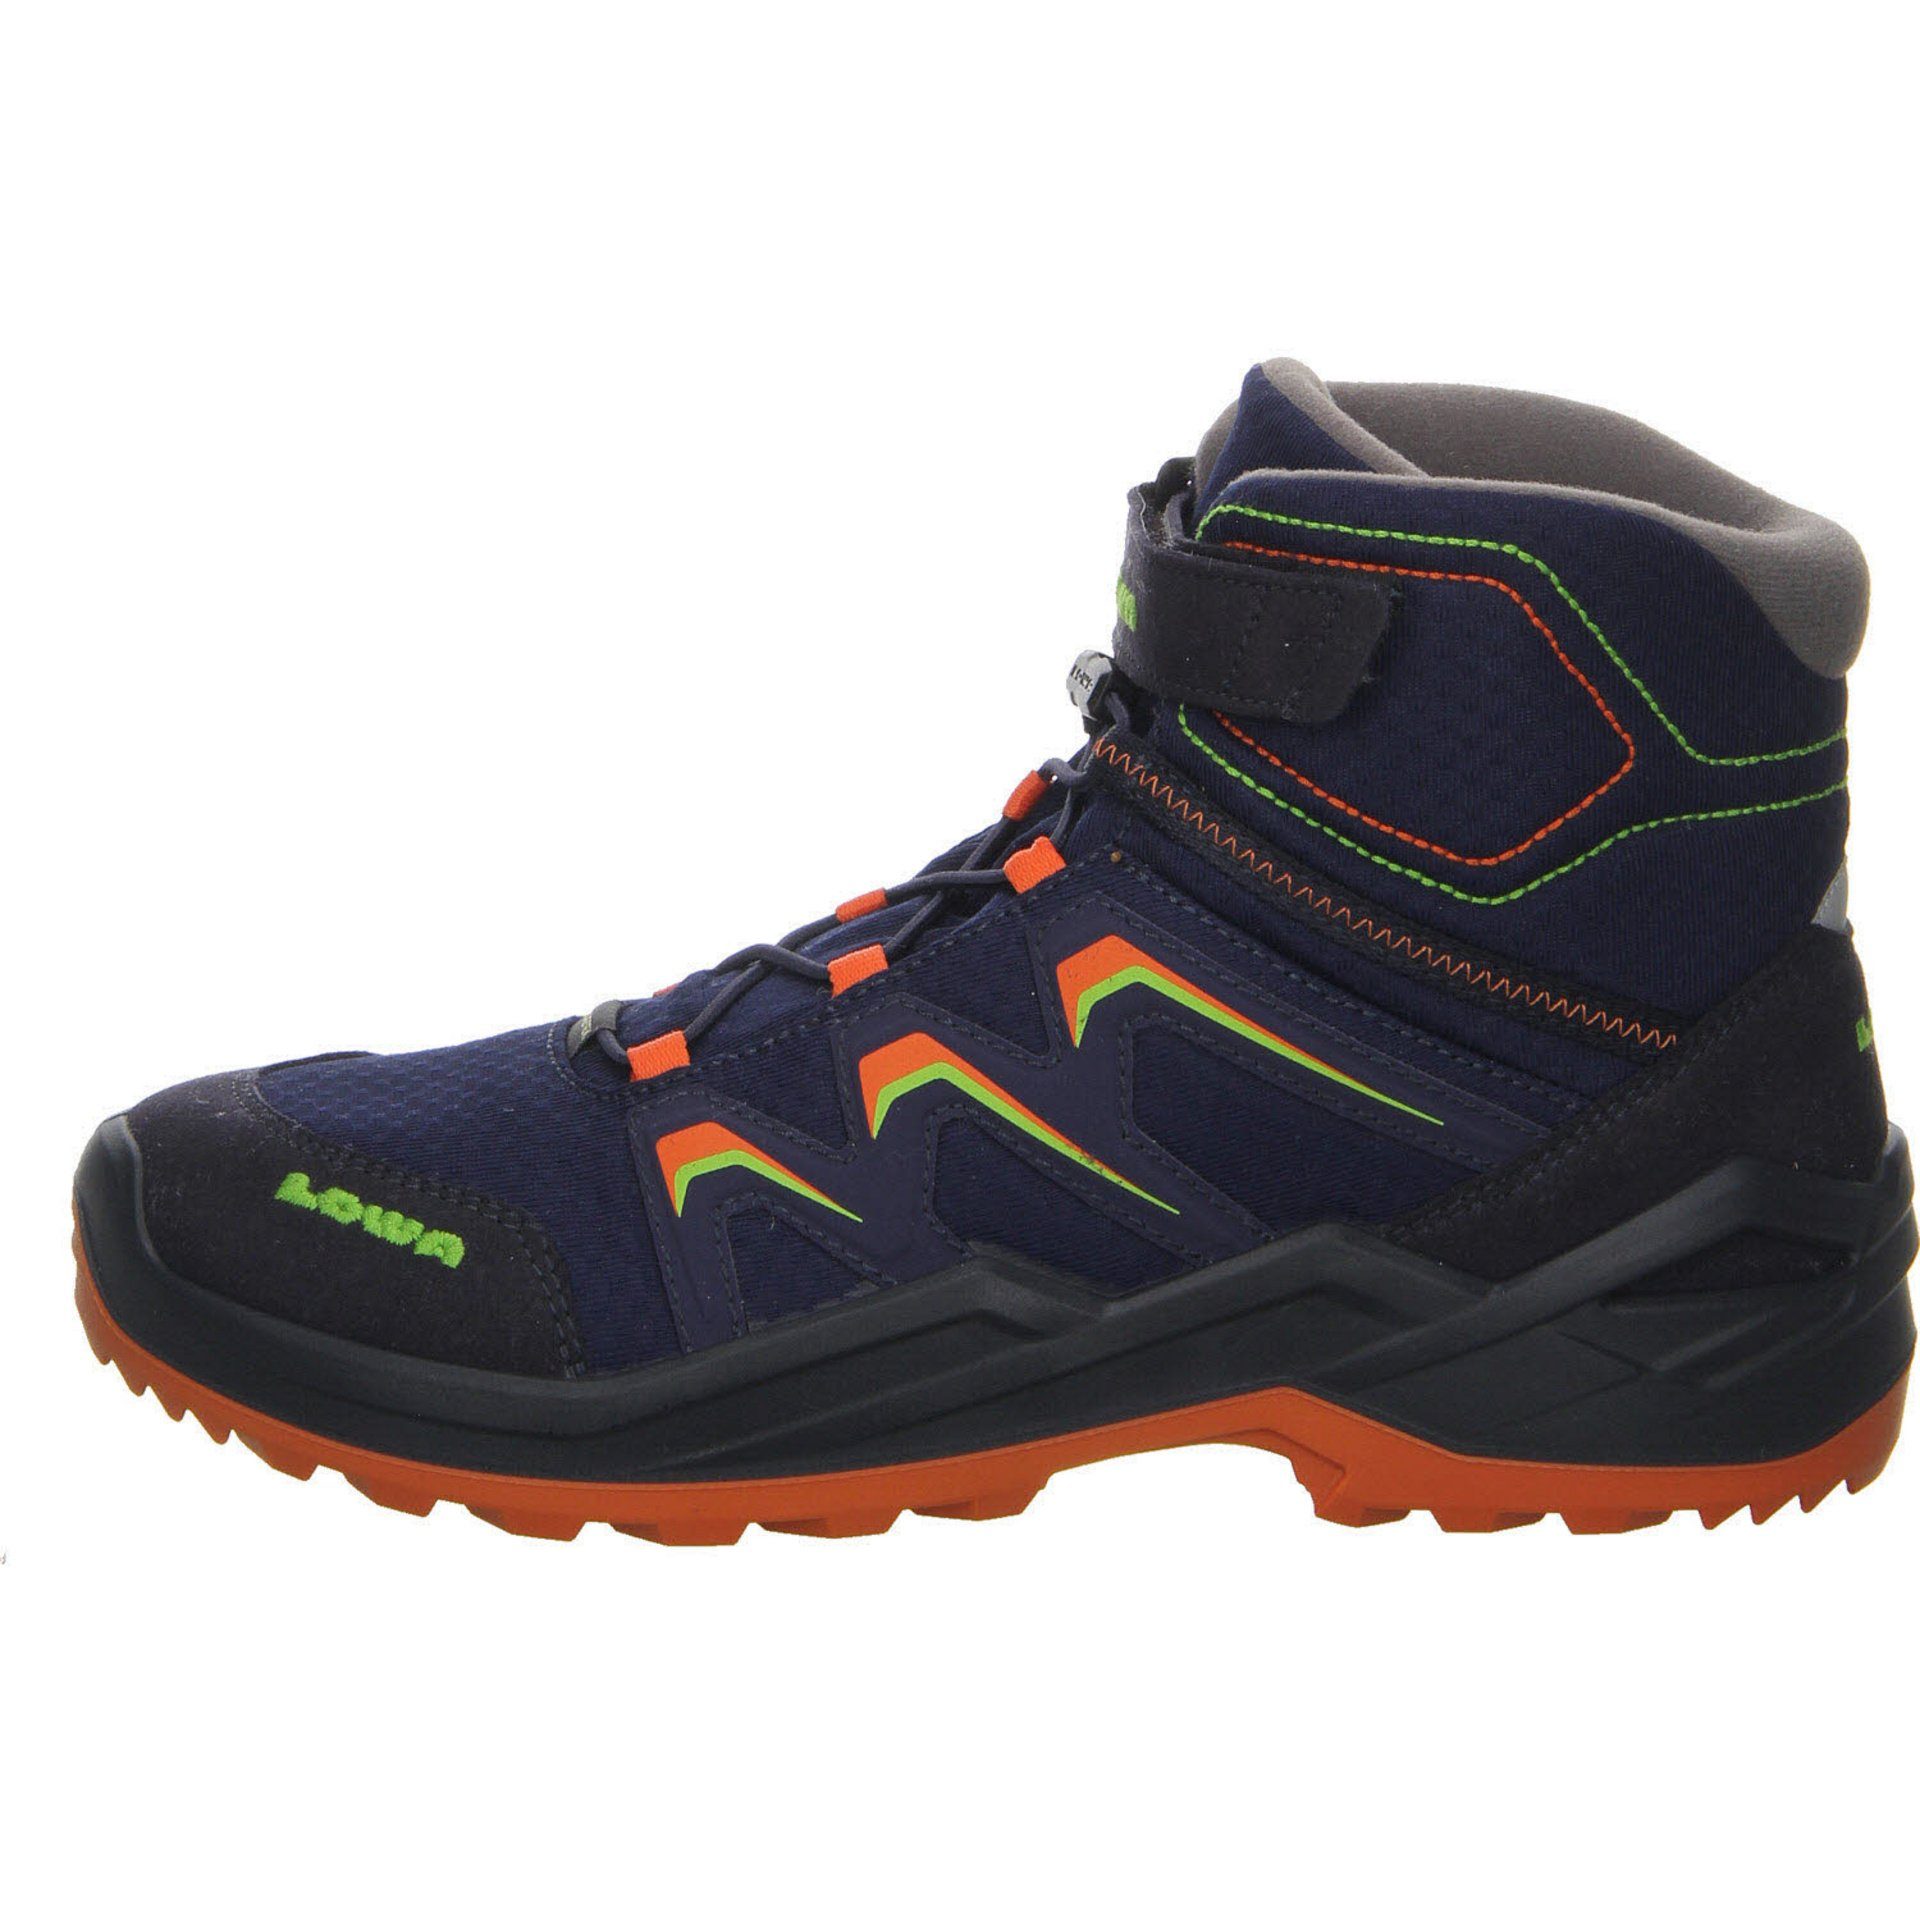 Boots Stiefel Textil GTX Jungen Stiefel Schuhe Lowa navy/orange Maddox Warm